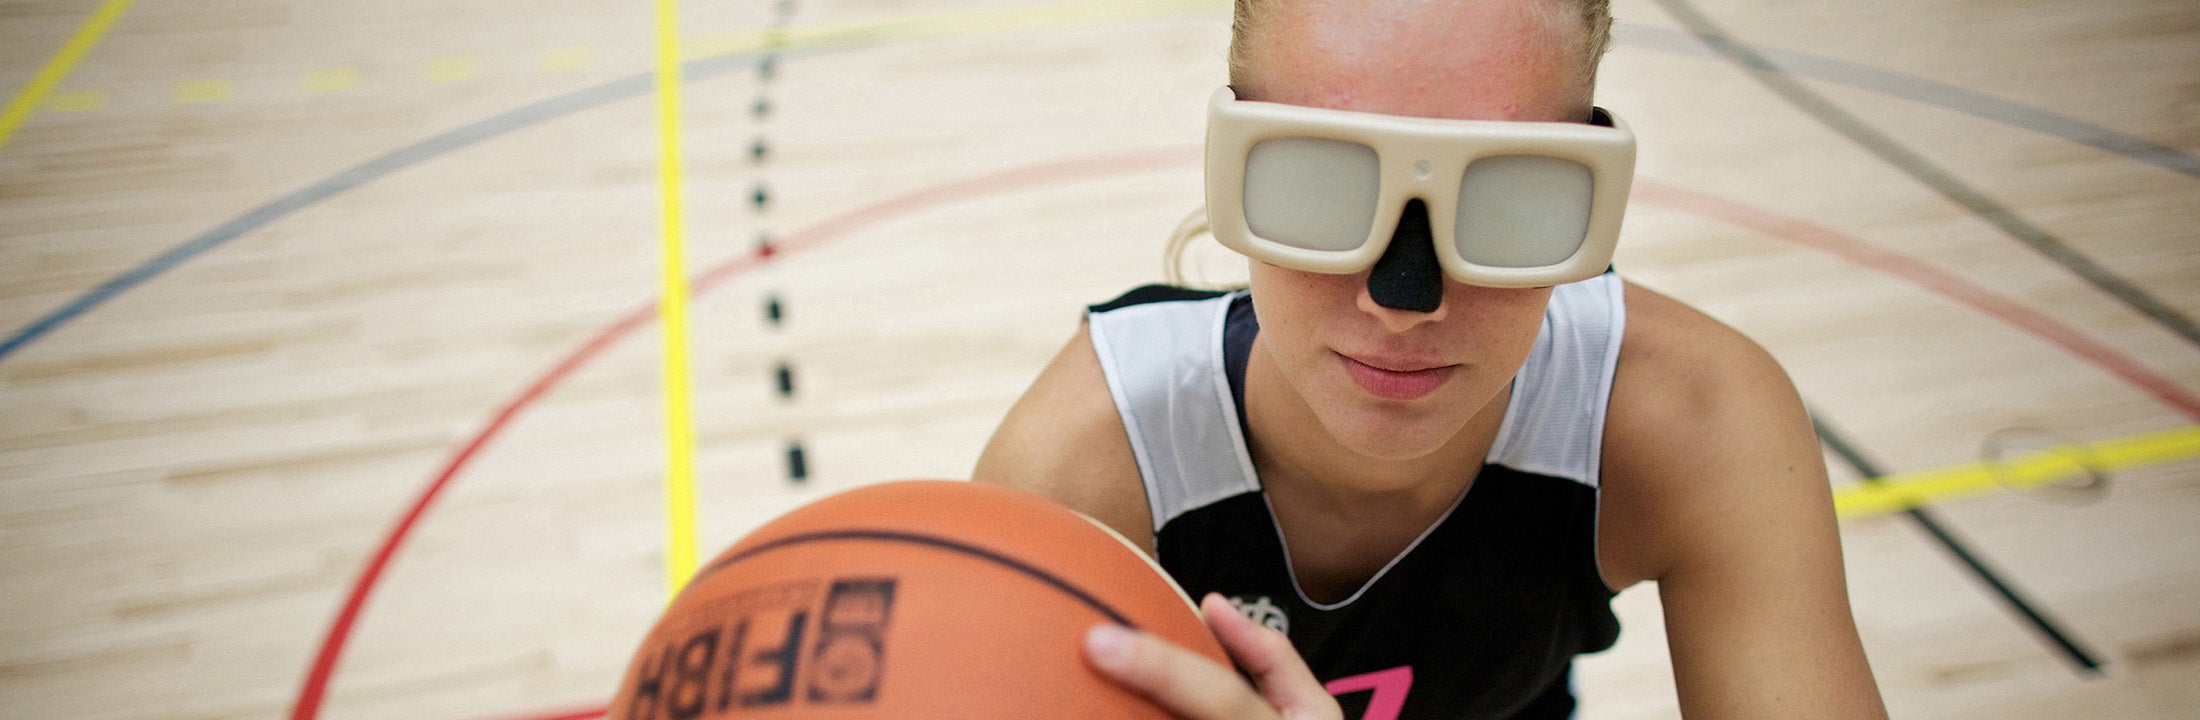 Een meisje speelt basketbal met een speciale bril op